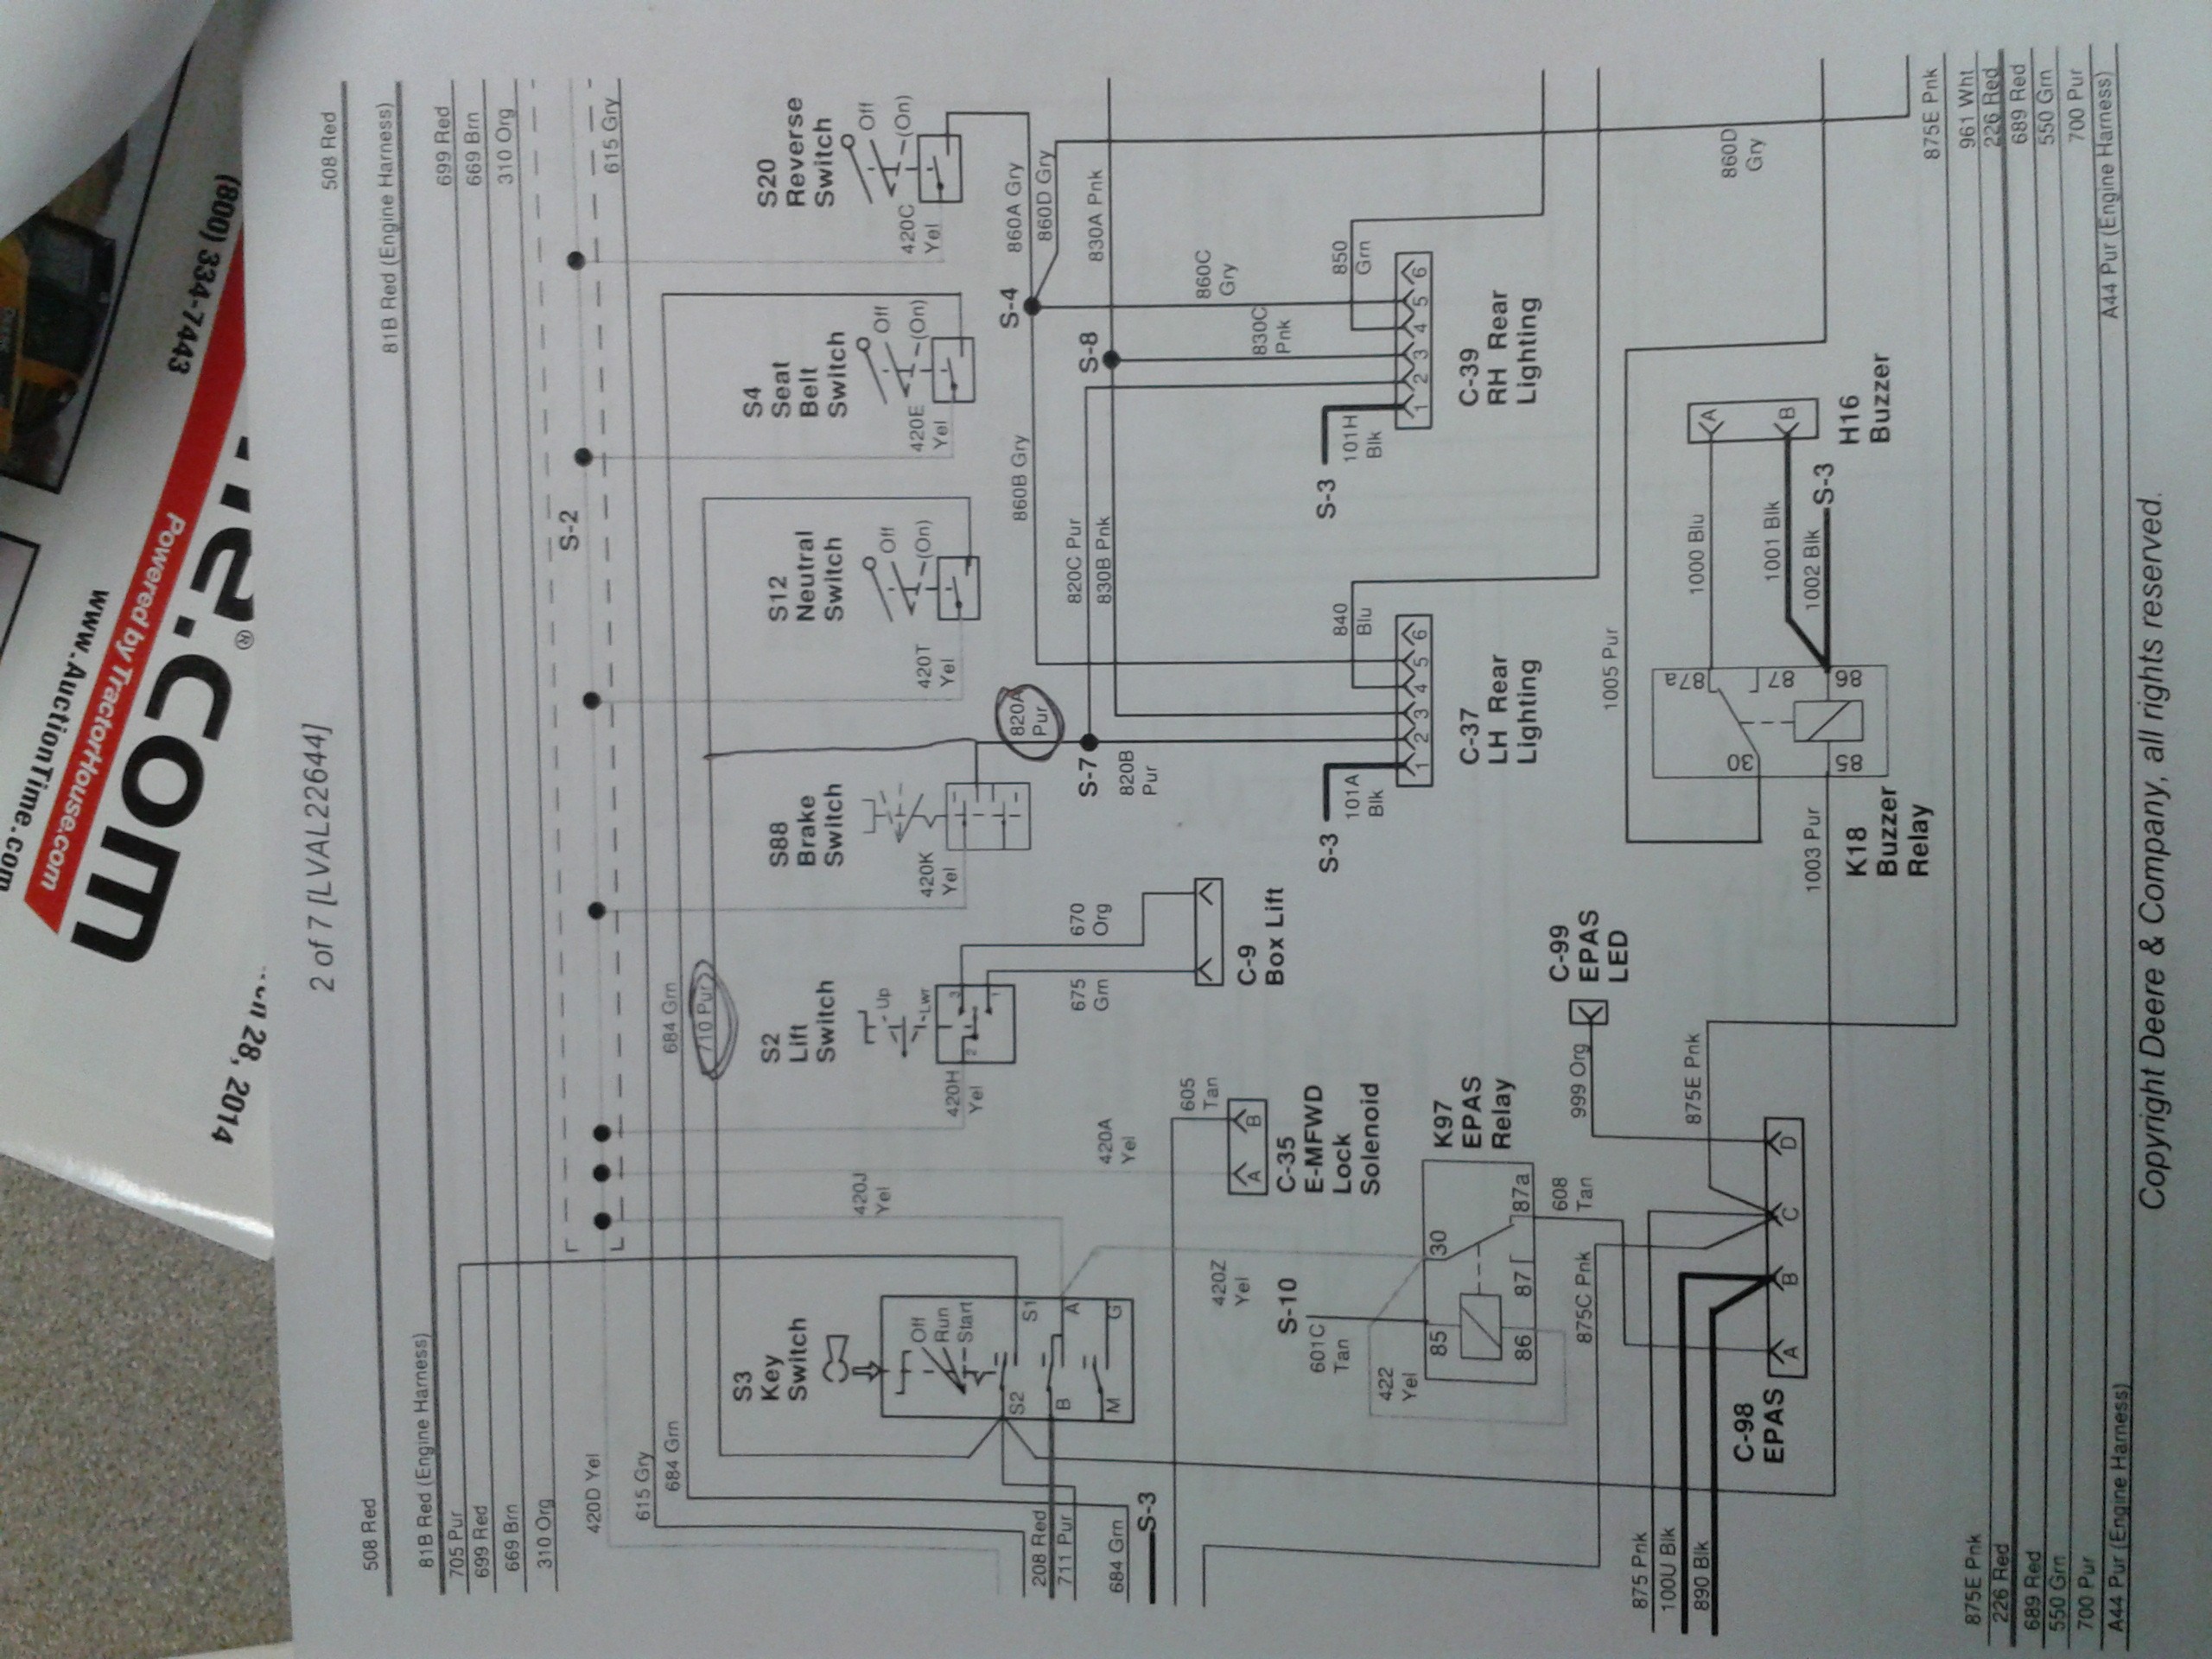 John Deere Gator Hpx 4x4 Wiring Diagram Electrical Wiring Diagrams for Dummies Awesome Electrical Wiring